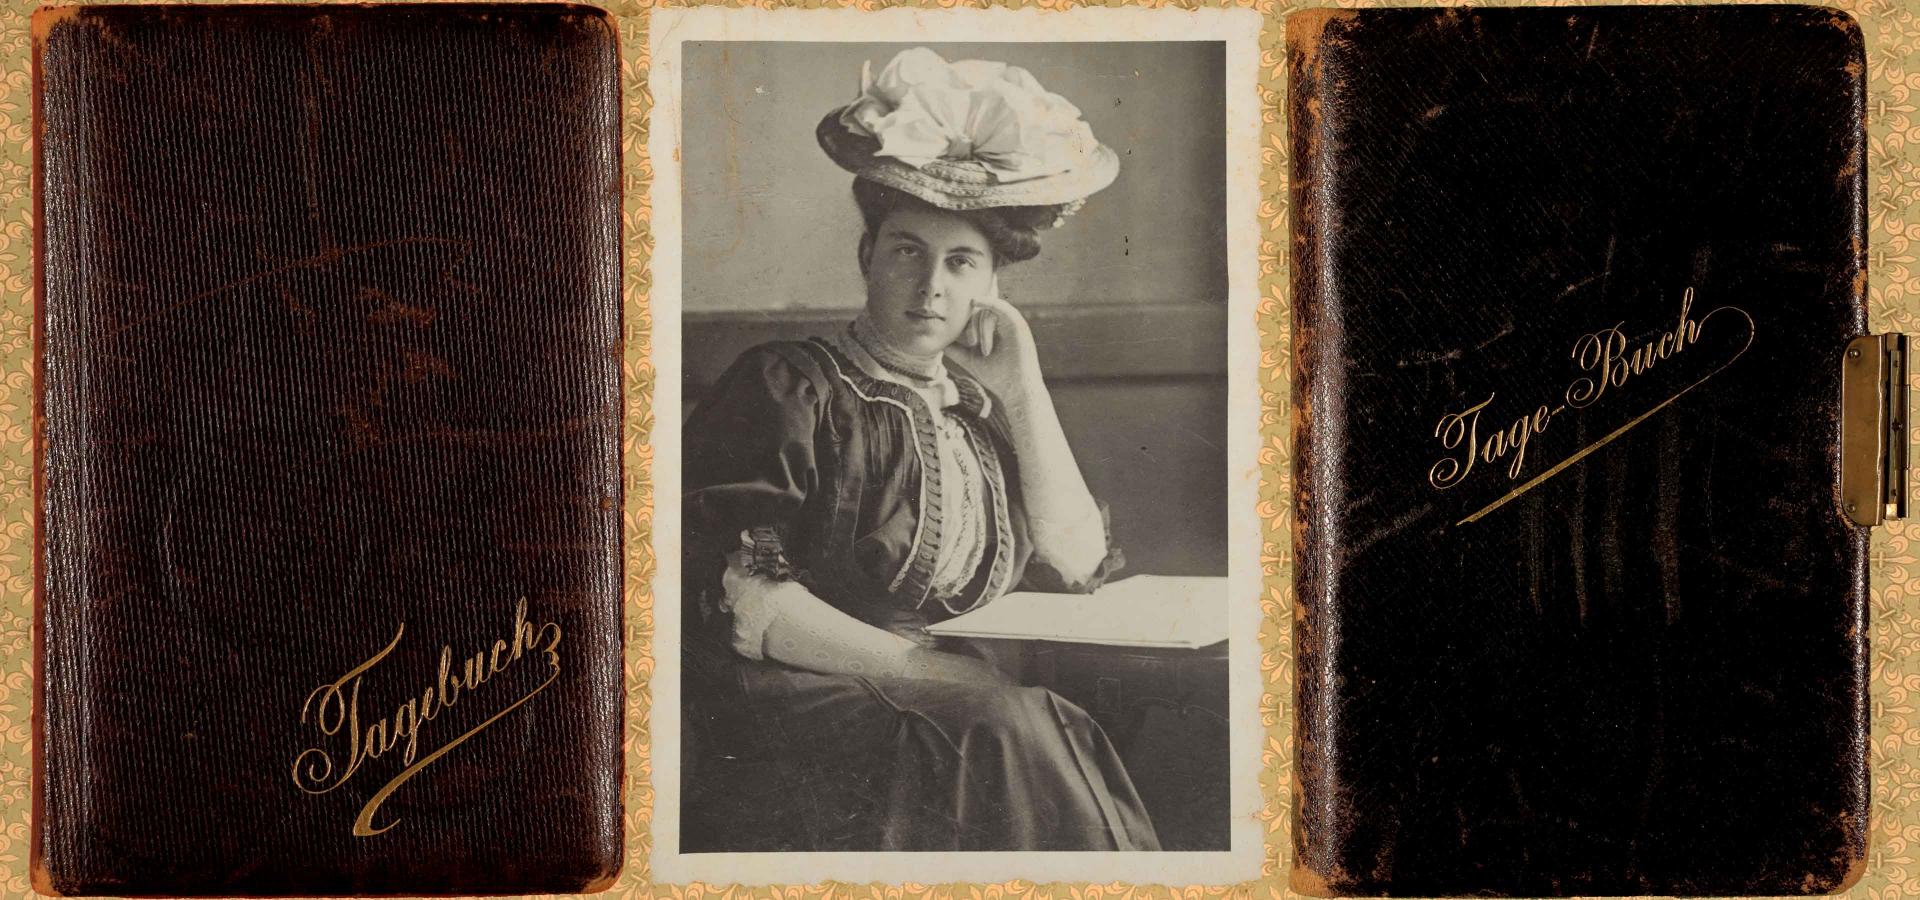 Links: Cover eines Tagebuchs, Mitte: Schwarz-Weiß Porträtfoto einer jungen Dame. Sie trägt ein hochgeschlossenes Kleid mit Hut im Stil der 1910er Jahre. Rechts: Cover eines abgegriffenen Tagebuchs mit Ledereinband und dem goldenen Schriftzug „Tage-Buch“.